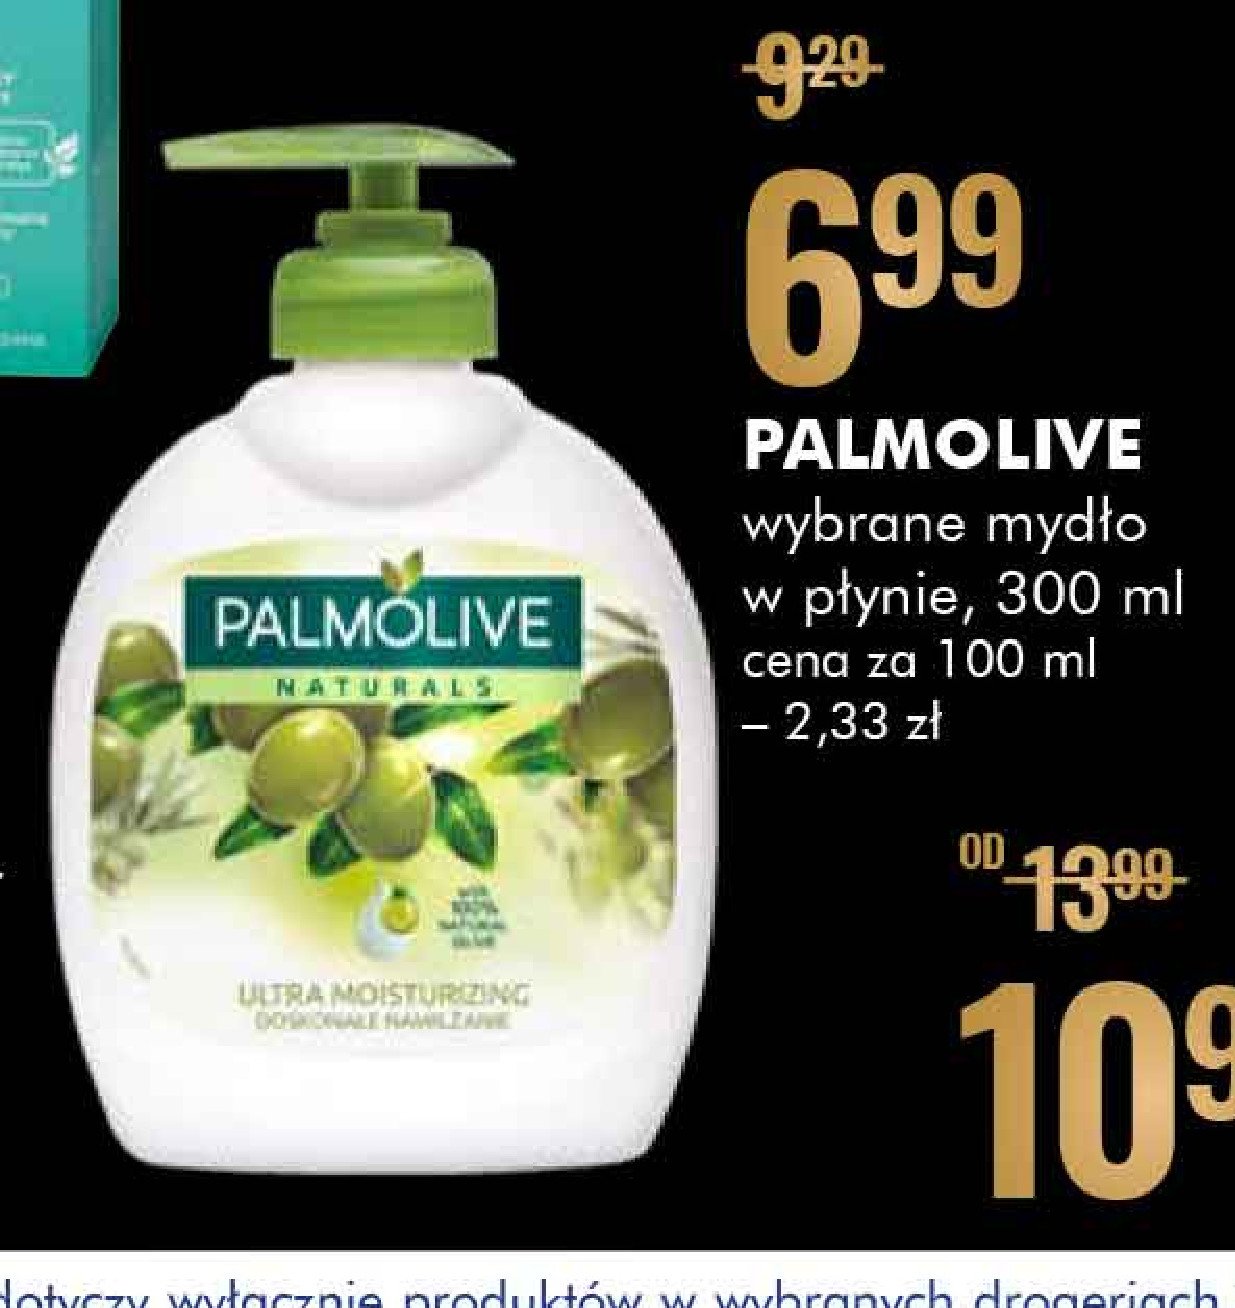 Mydło ultra moisturising Palmolive promocja